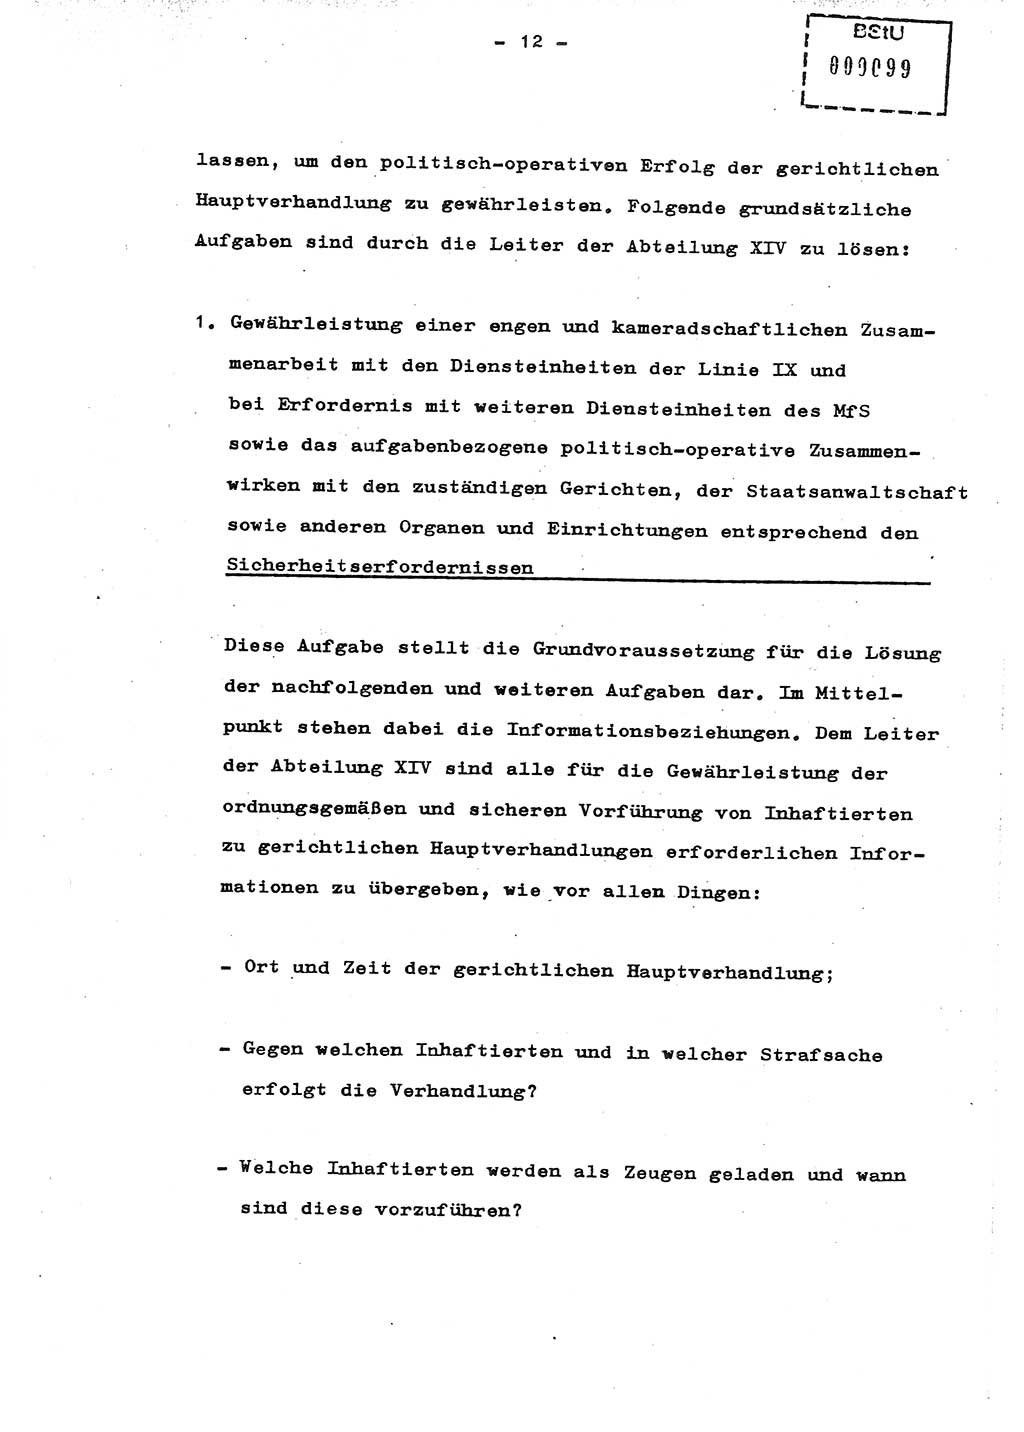 Schulungsmaterial Exemplar-Nr.: 8, Ministerium für Staatssicherheit [Deutsche Demokratische Republik (DDR)], Abteilung (Abt.) ⅩⅣ, Berlin 1987, Seite 12 (Sch.-Mat. Expl. 8 MfS DDR Abt. ⅩⅣ /87 1987, S. 12)